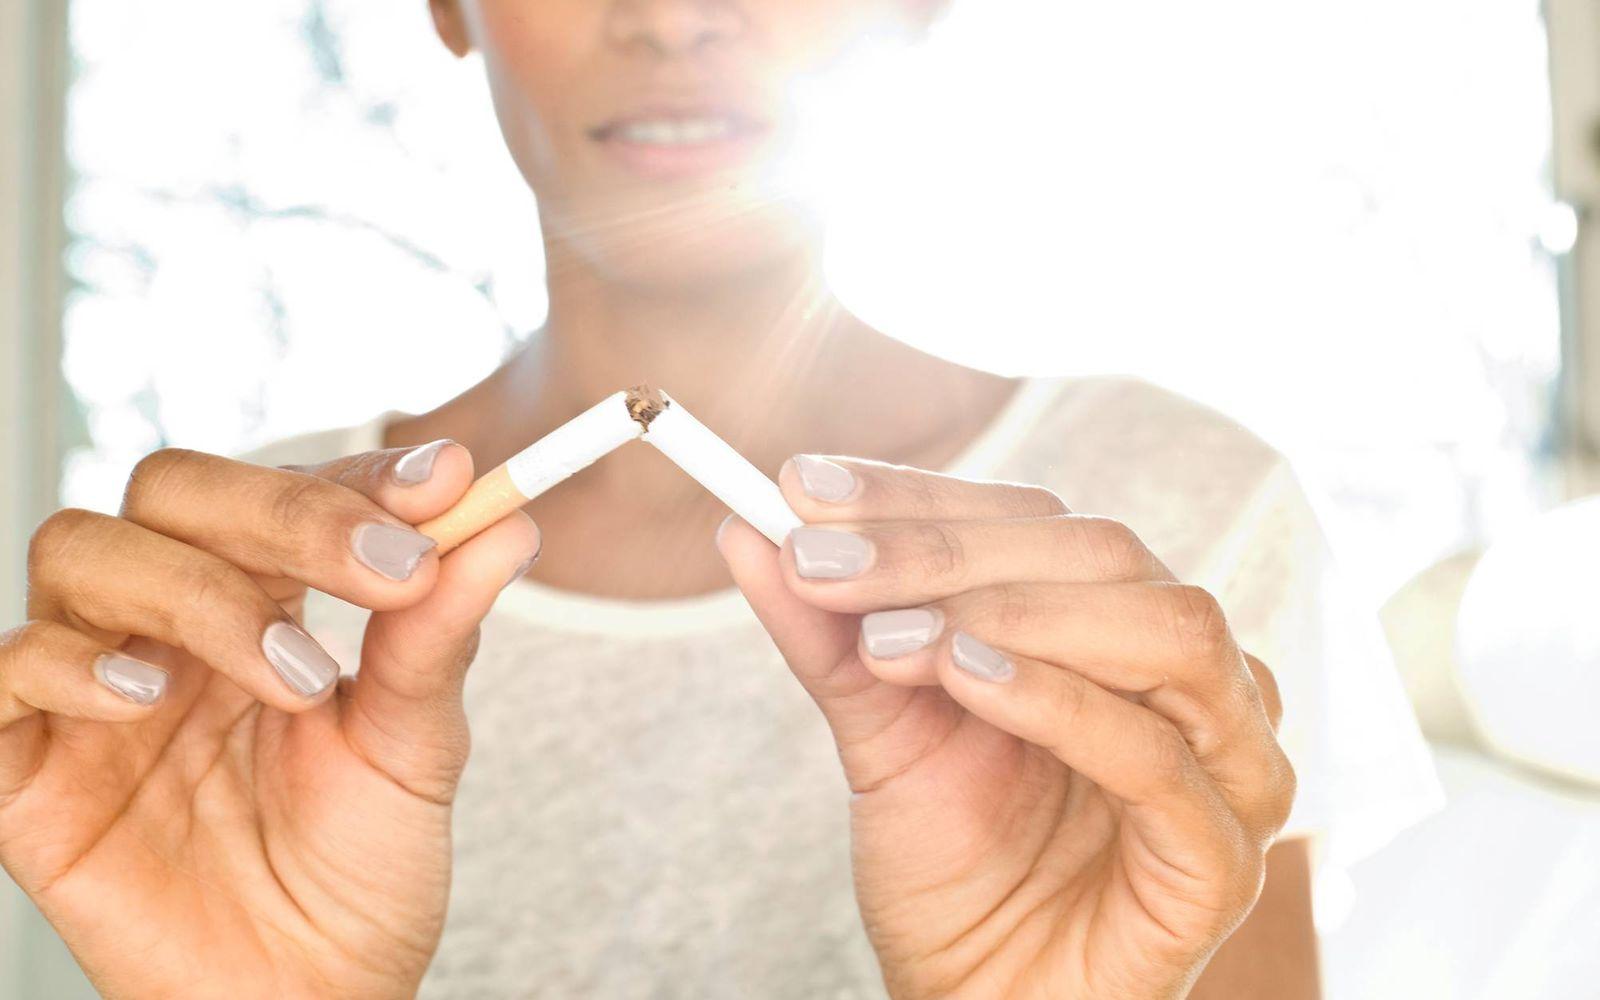 Bild: Frau bricht Zigarette entzwei, um ihre Nikotinsucht zu beenden.